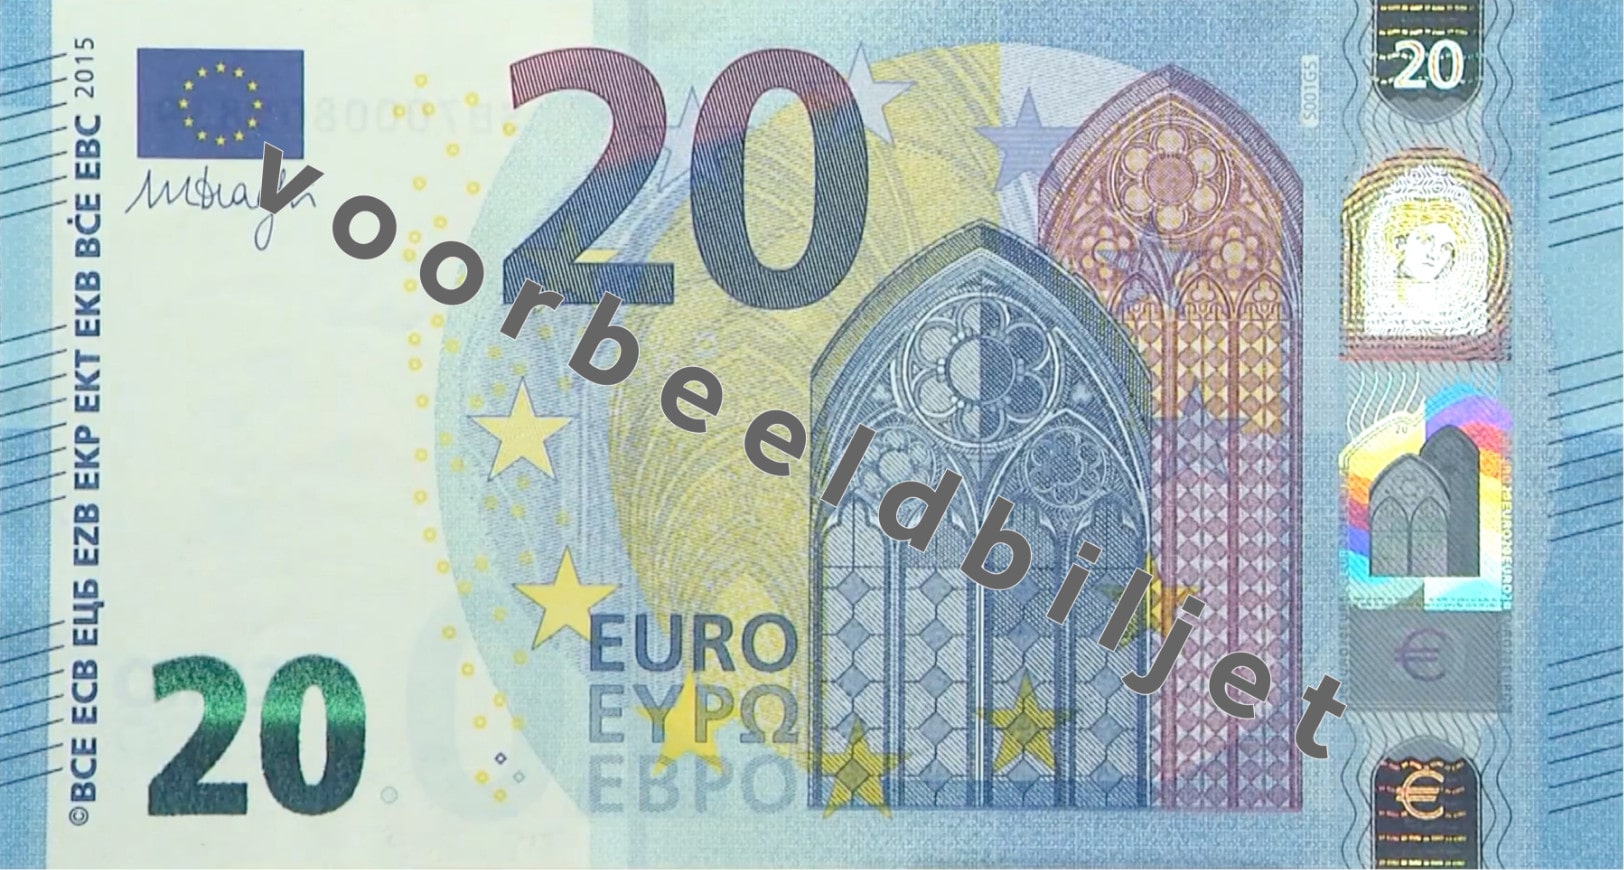 Twintig euro biljet (€20) voorkant